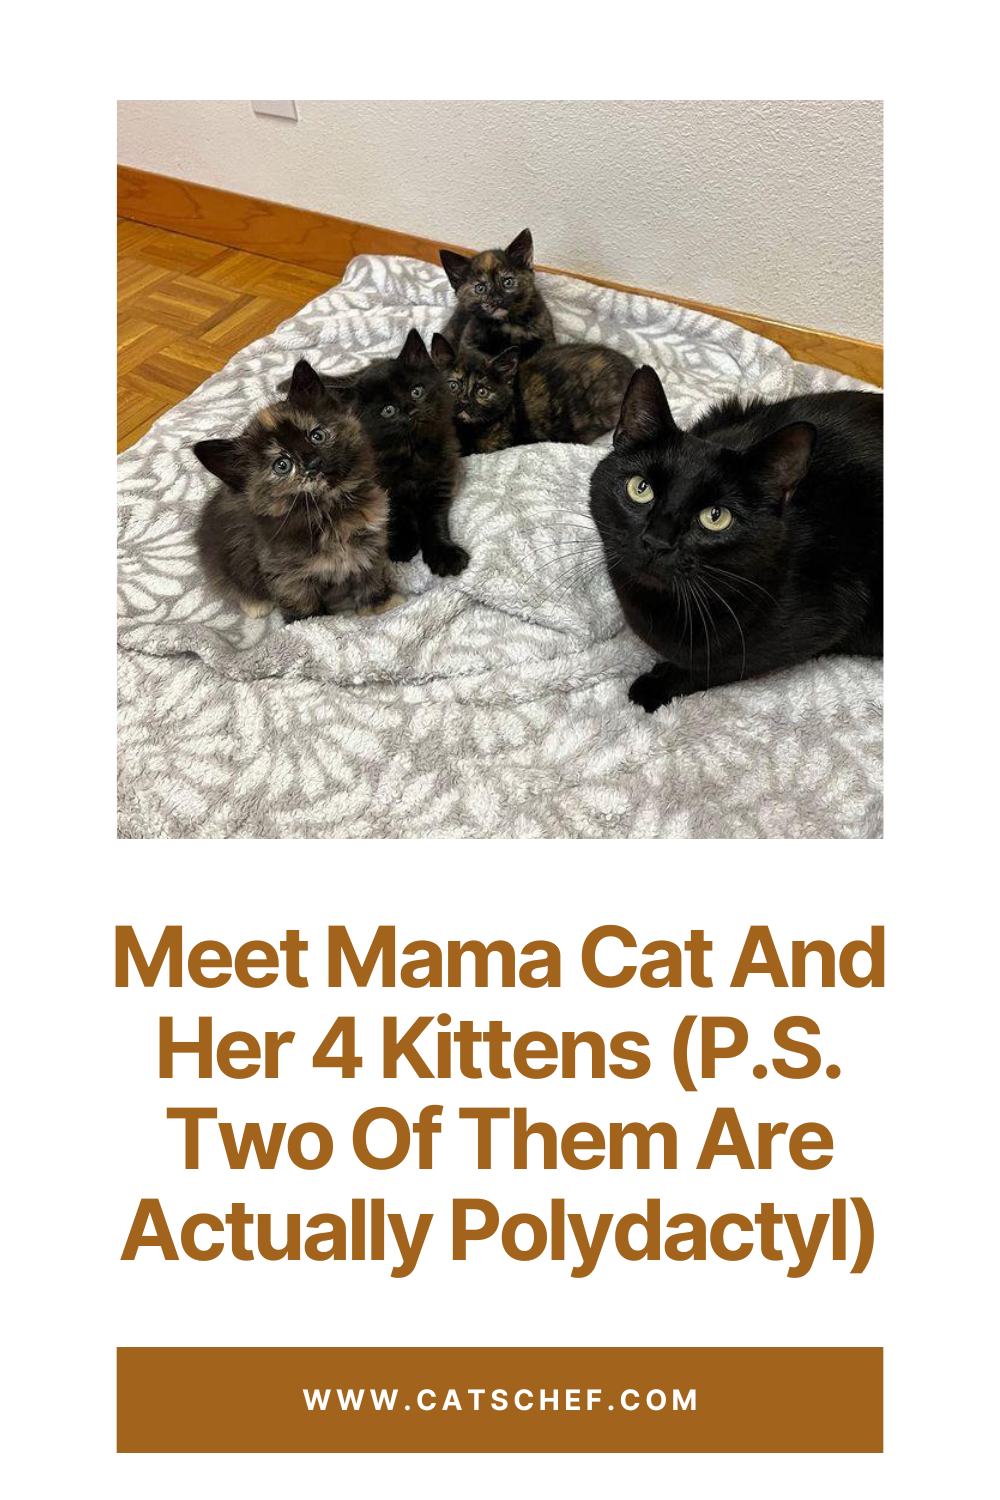 Anne Kedi ve 4 Yavrusuyla Tanışın (Not: İkisi Aslında Polidaktil)